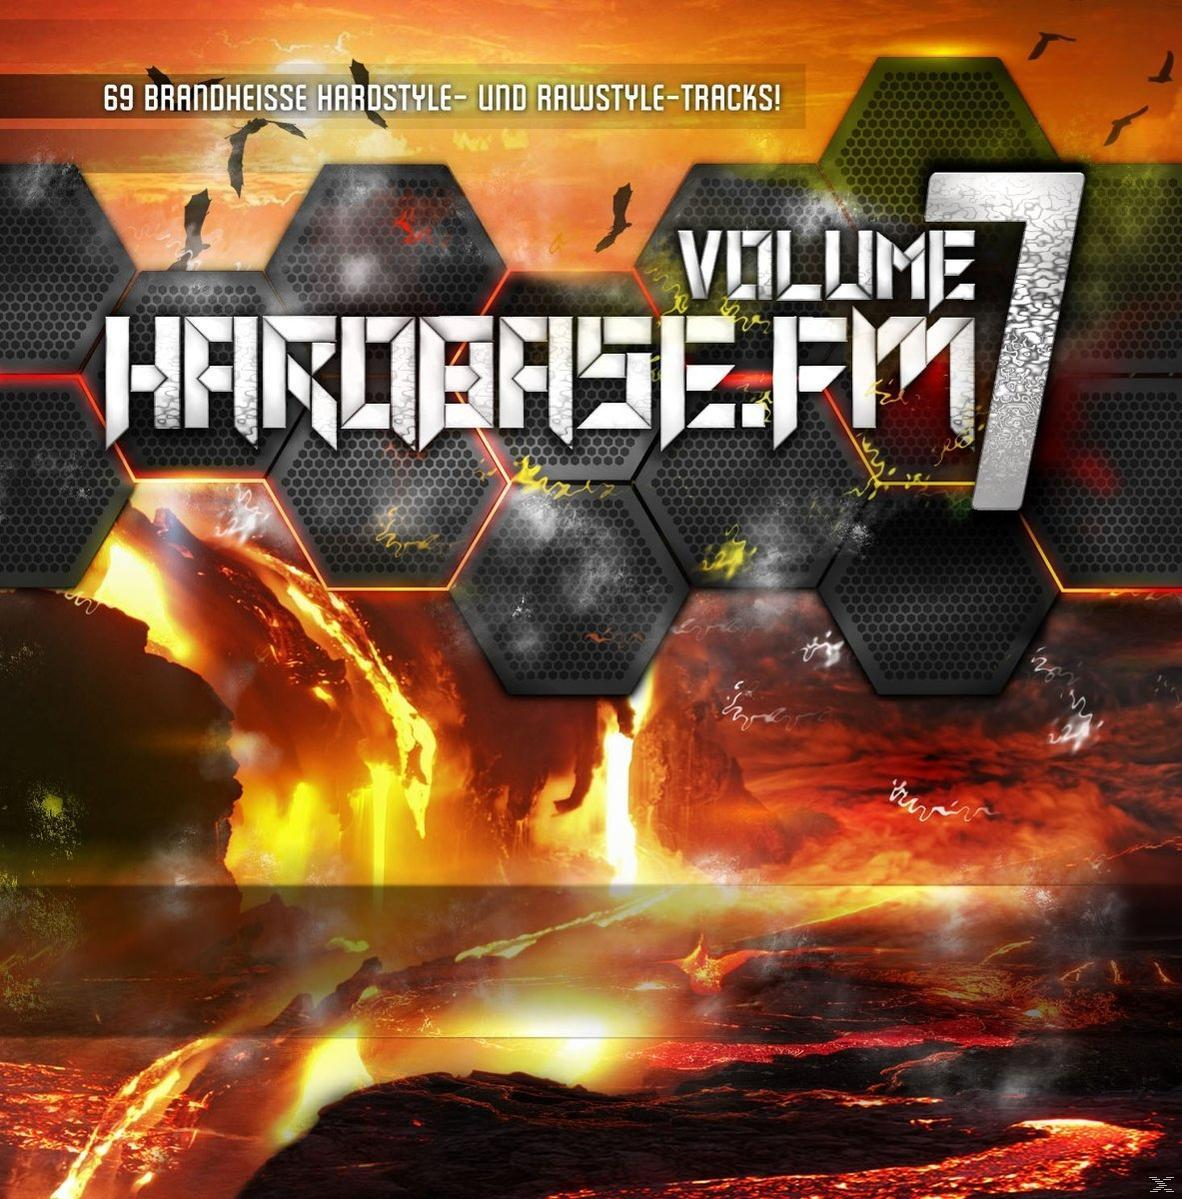 (CD) - Seven! HardBase.FM - Volume VARIOUS